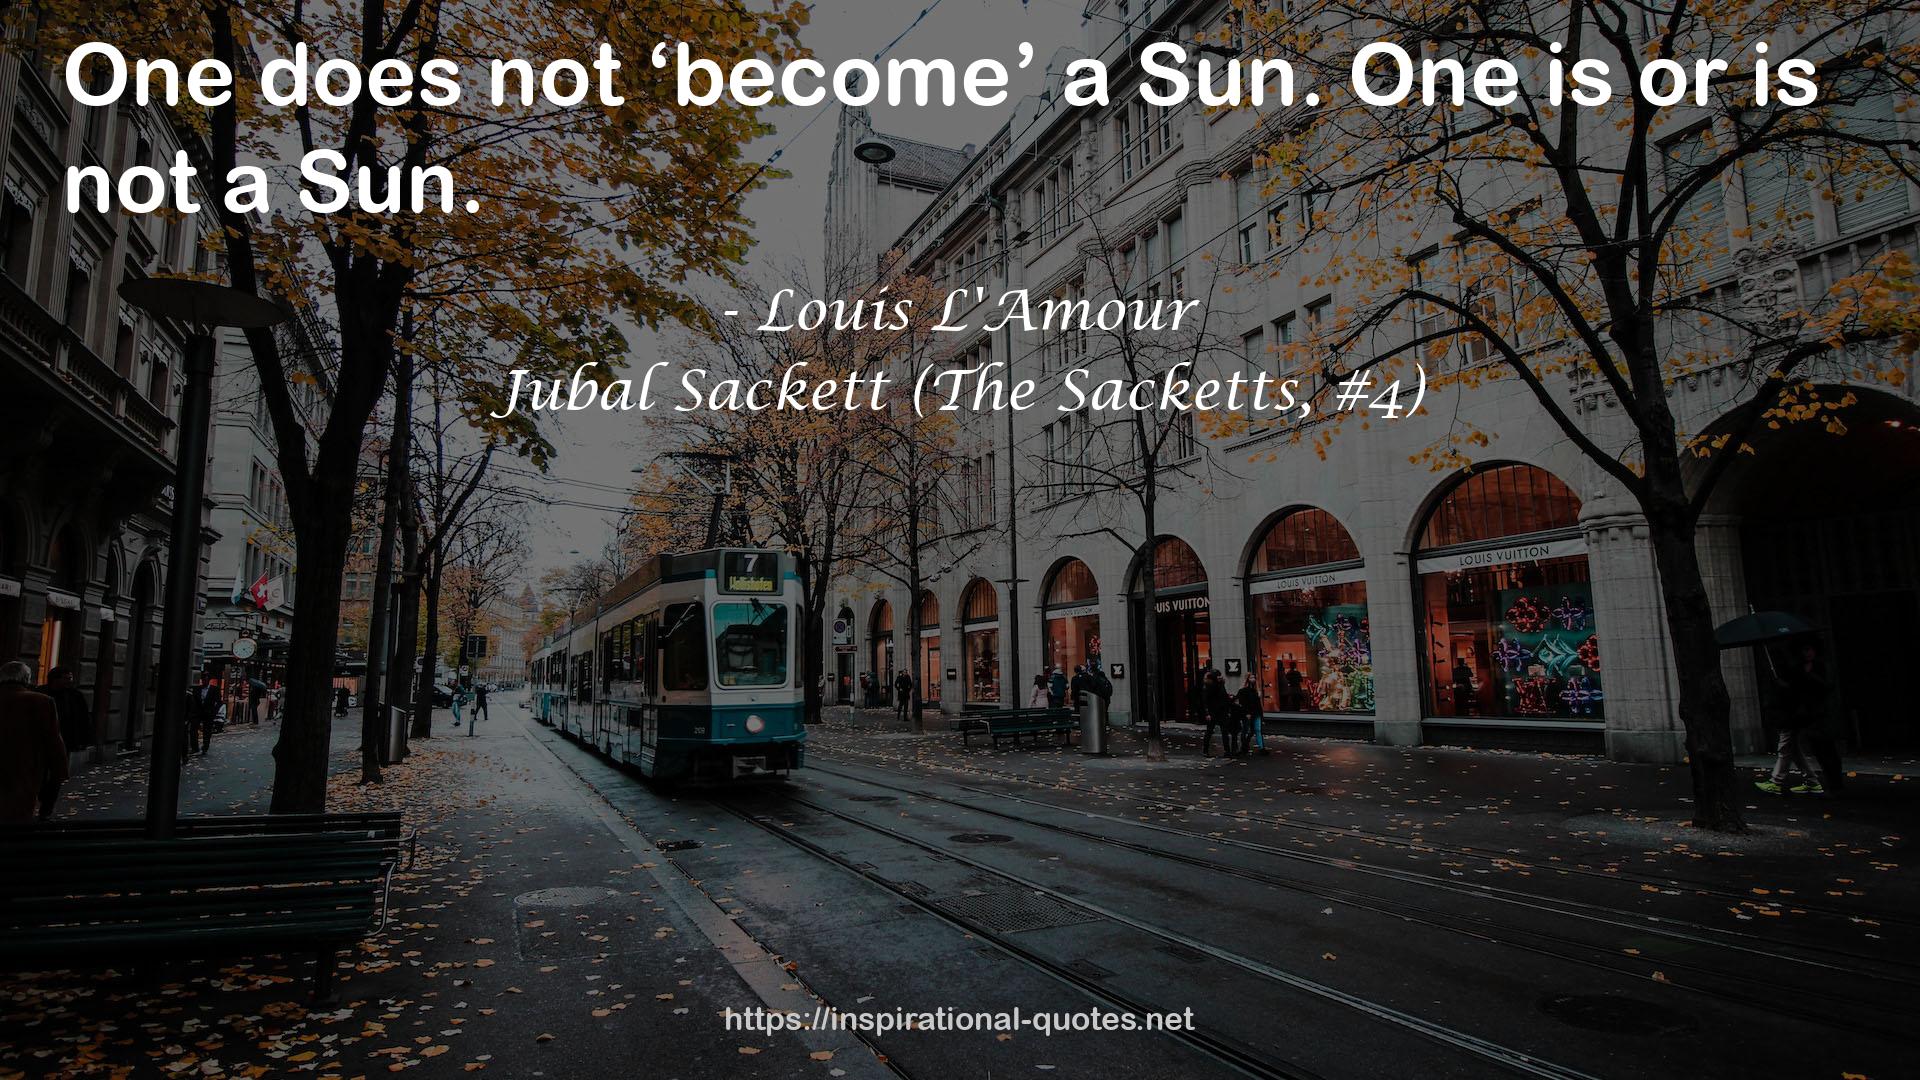 Jubal Sackett (The Sacketts, #4) QUOTES